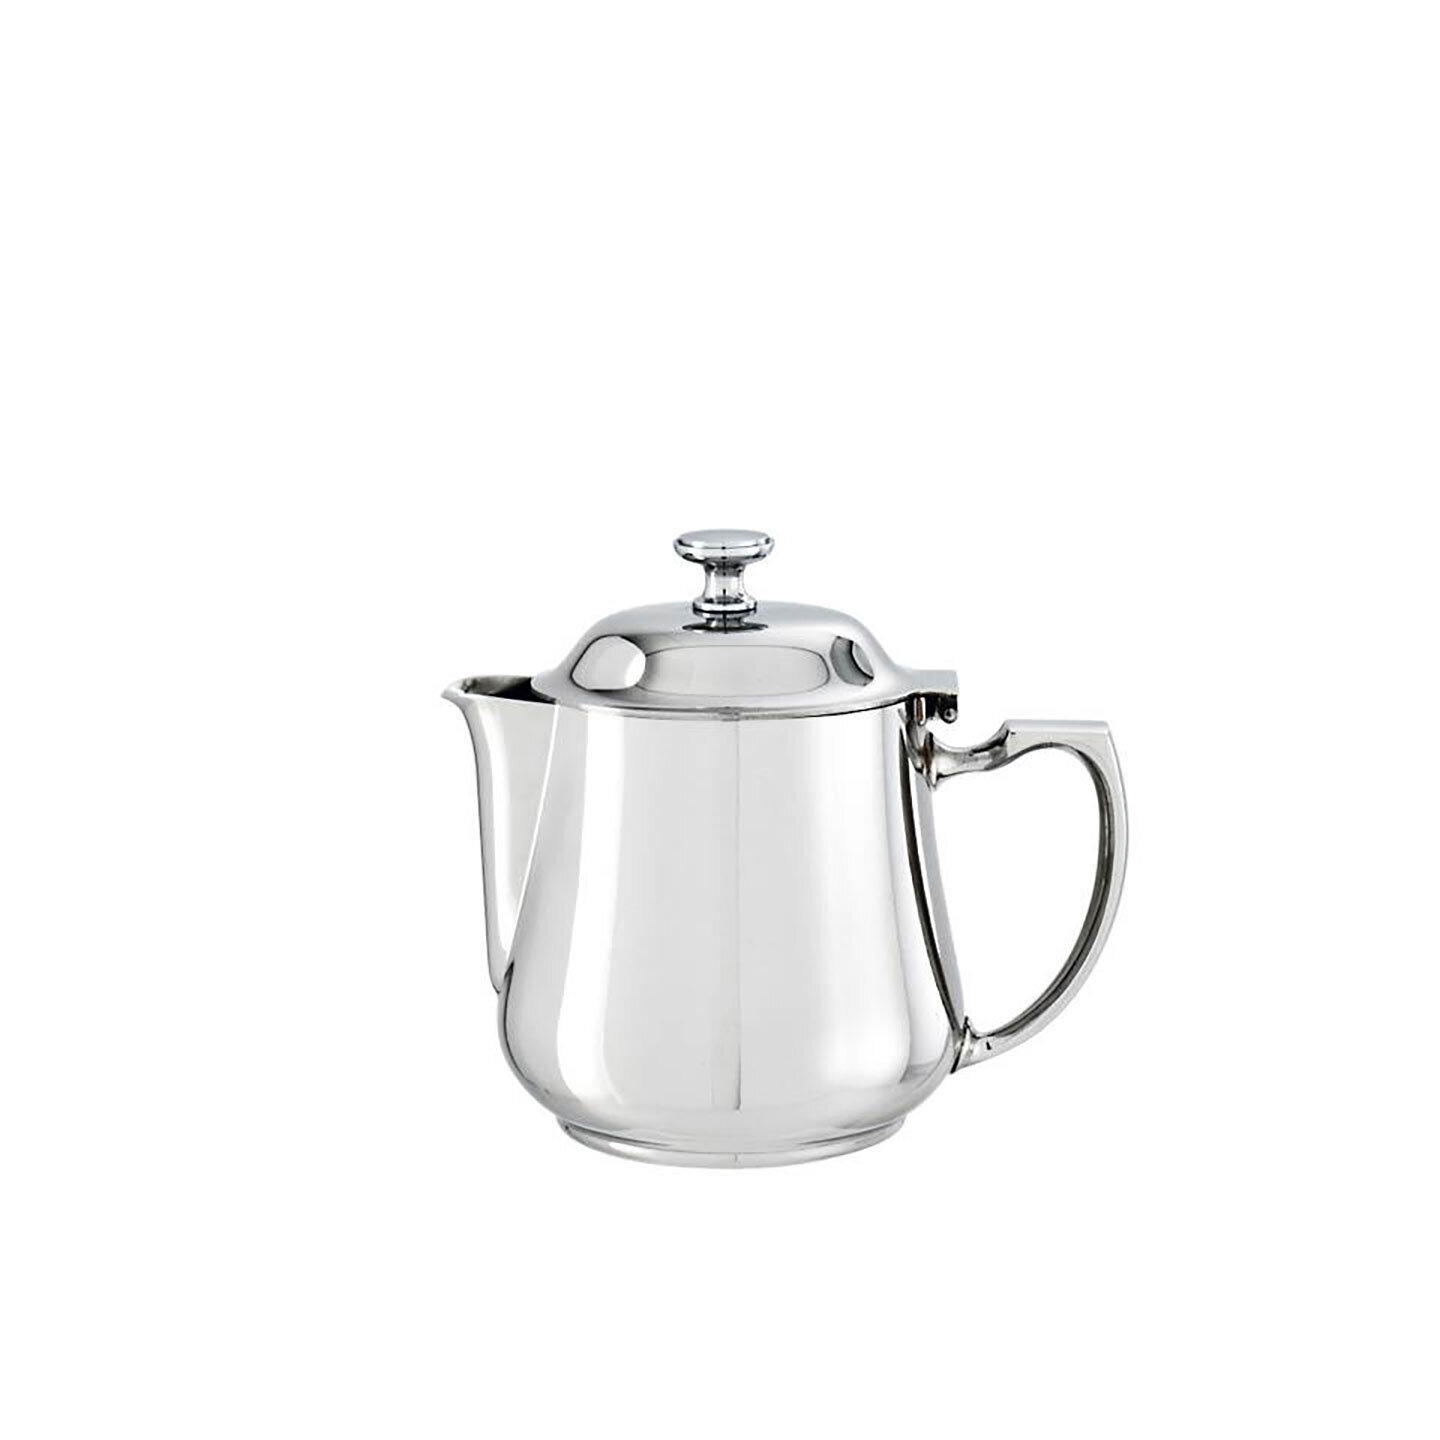 Sambonet Elite Tea Pot 55008-12